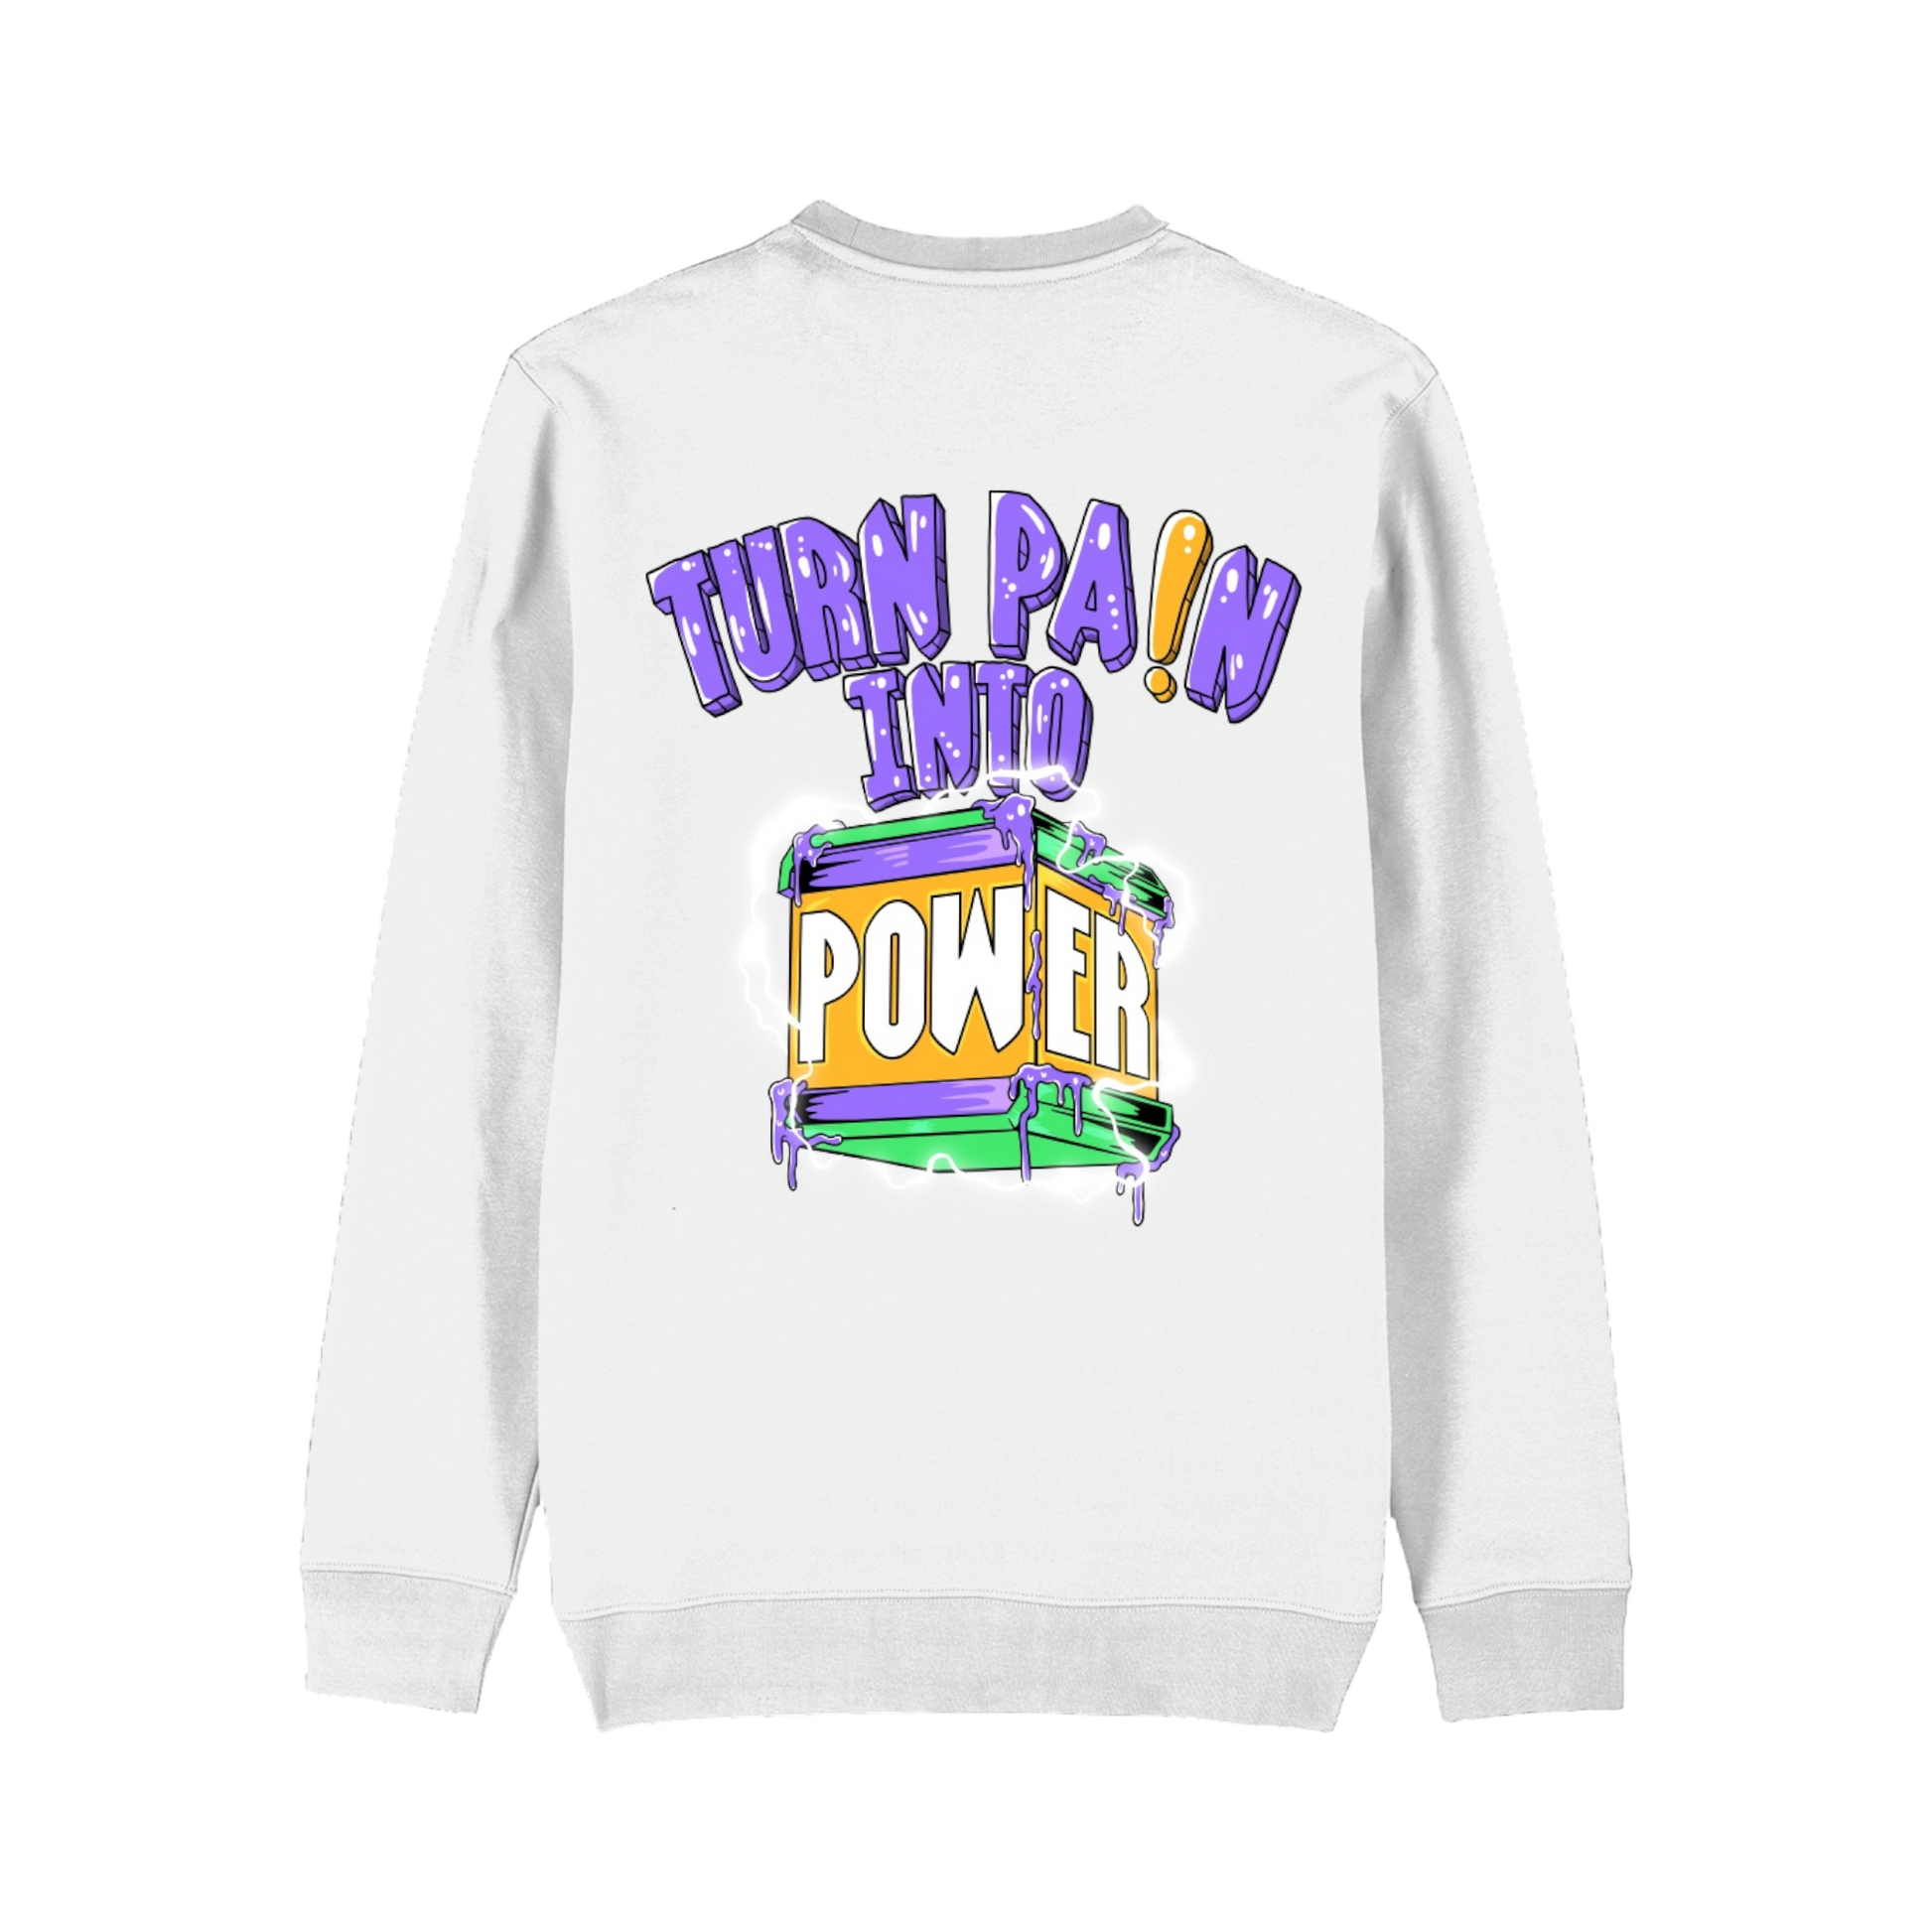 Turn Pain Into Power Sweatshirt - Bando Baby 